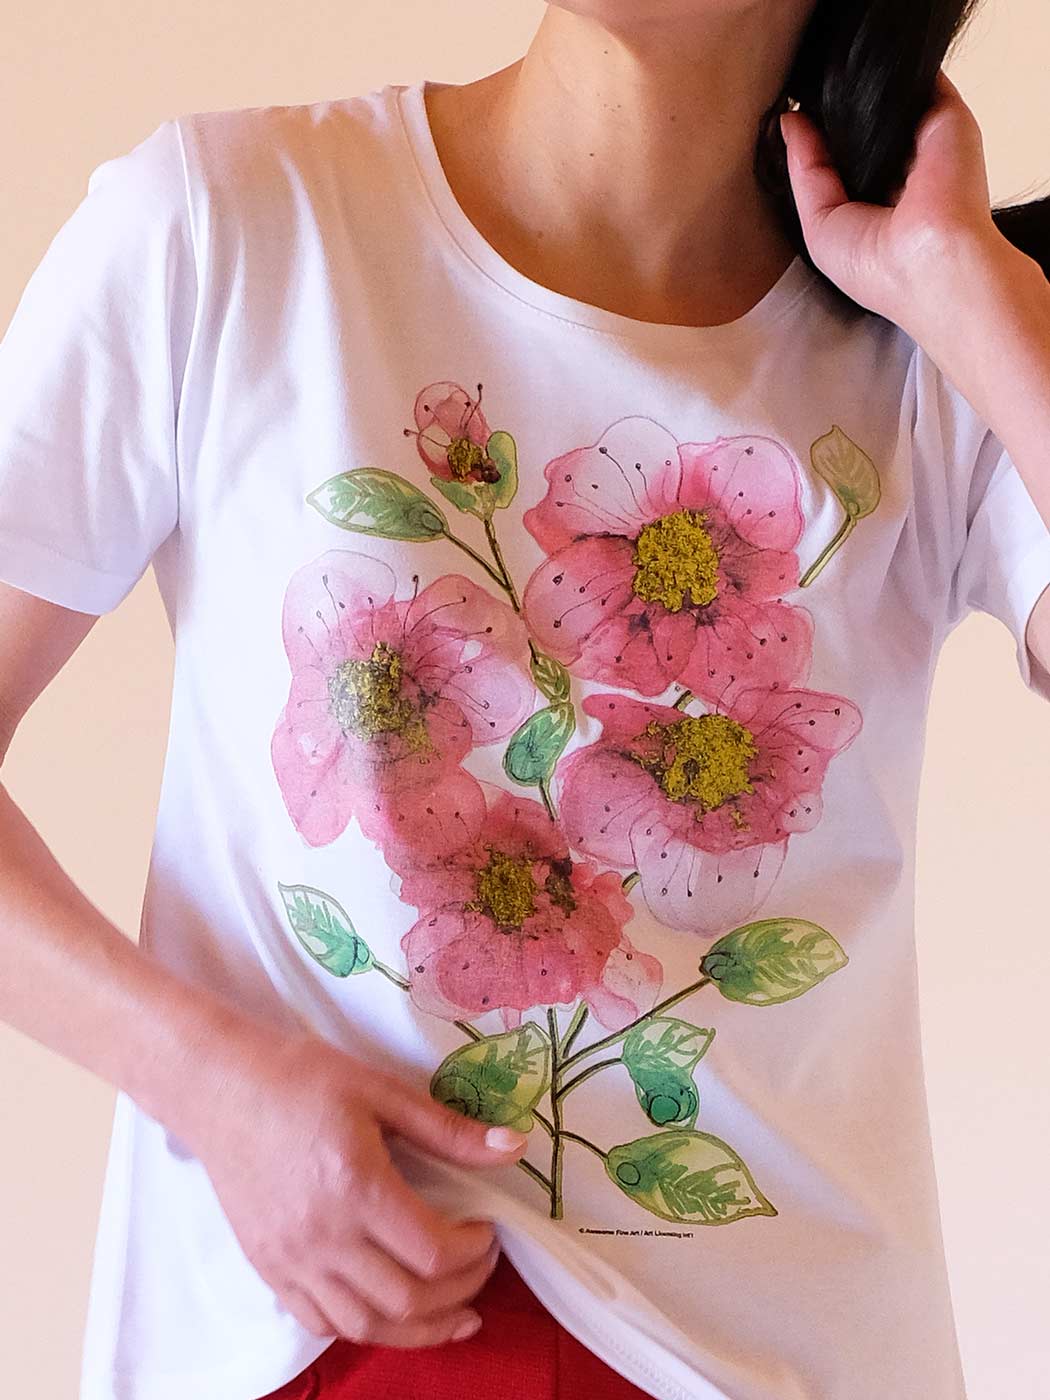 T-shirt com Bouquet Floral em 100% Algodão